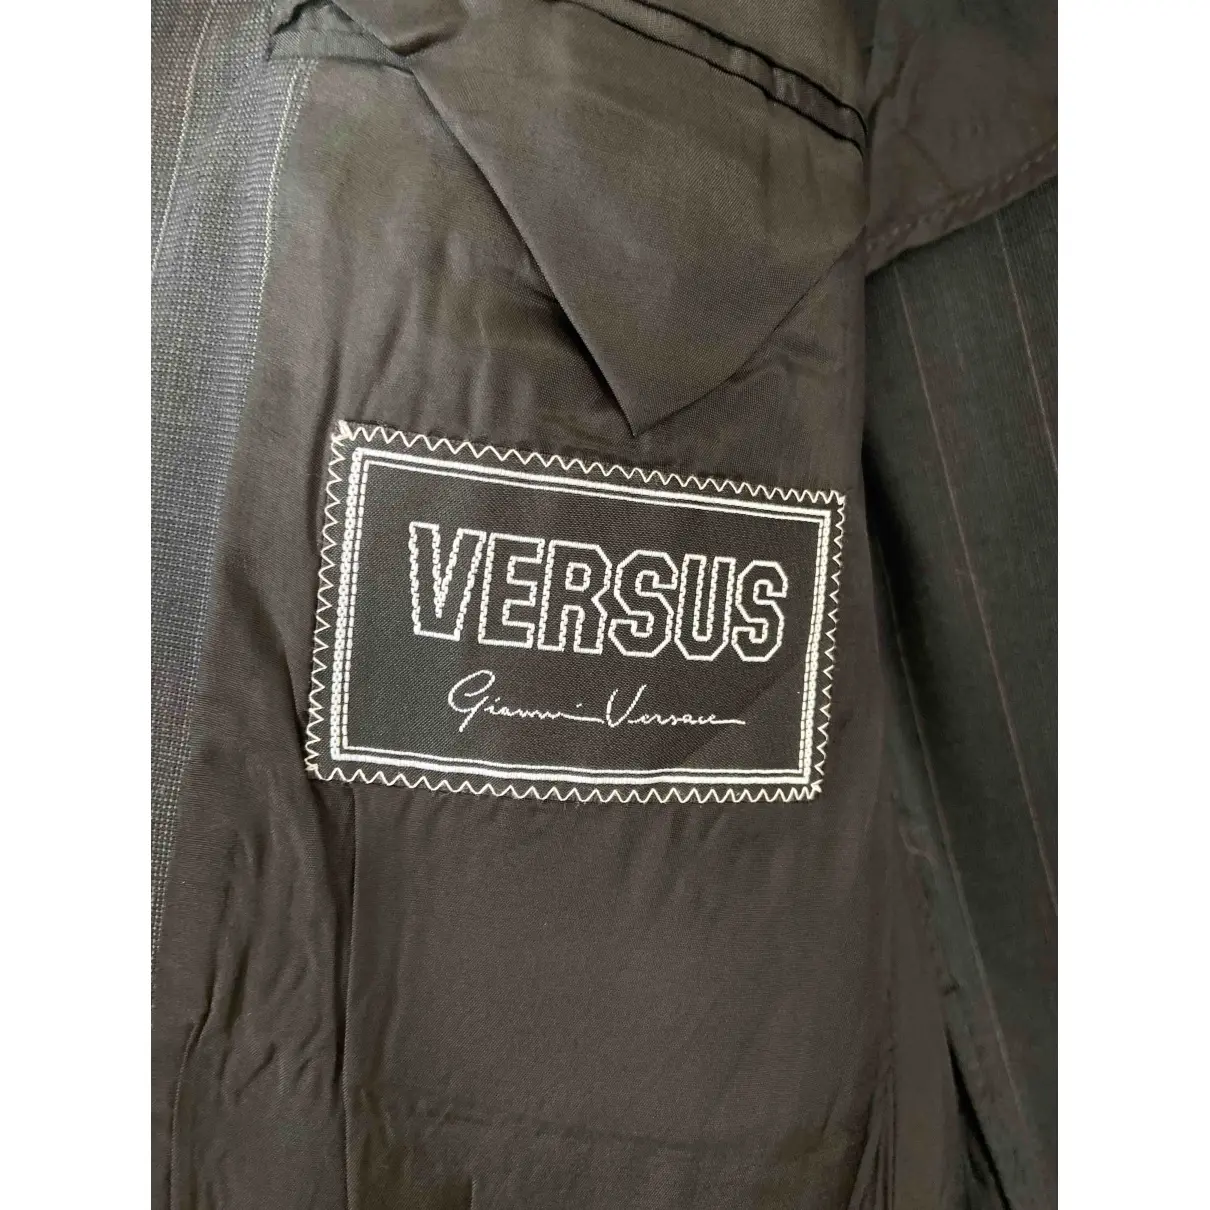 Buy Versus Wool vest online - Vintage